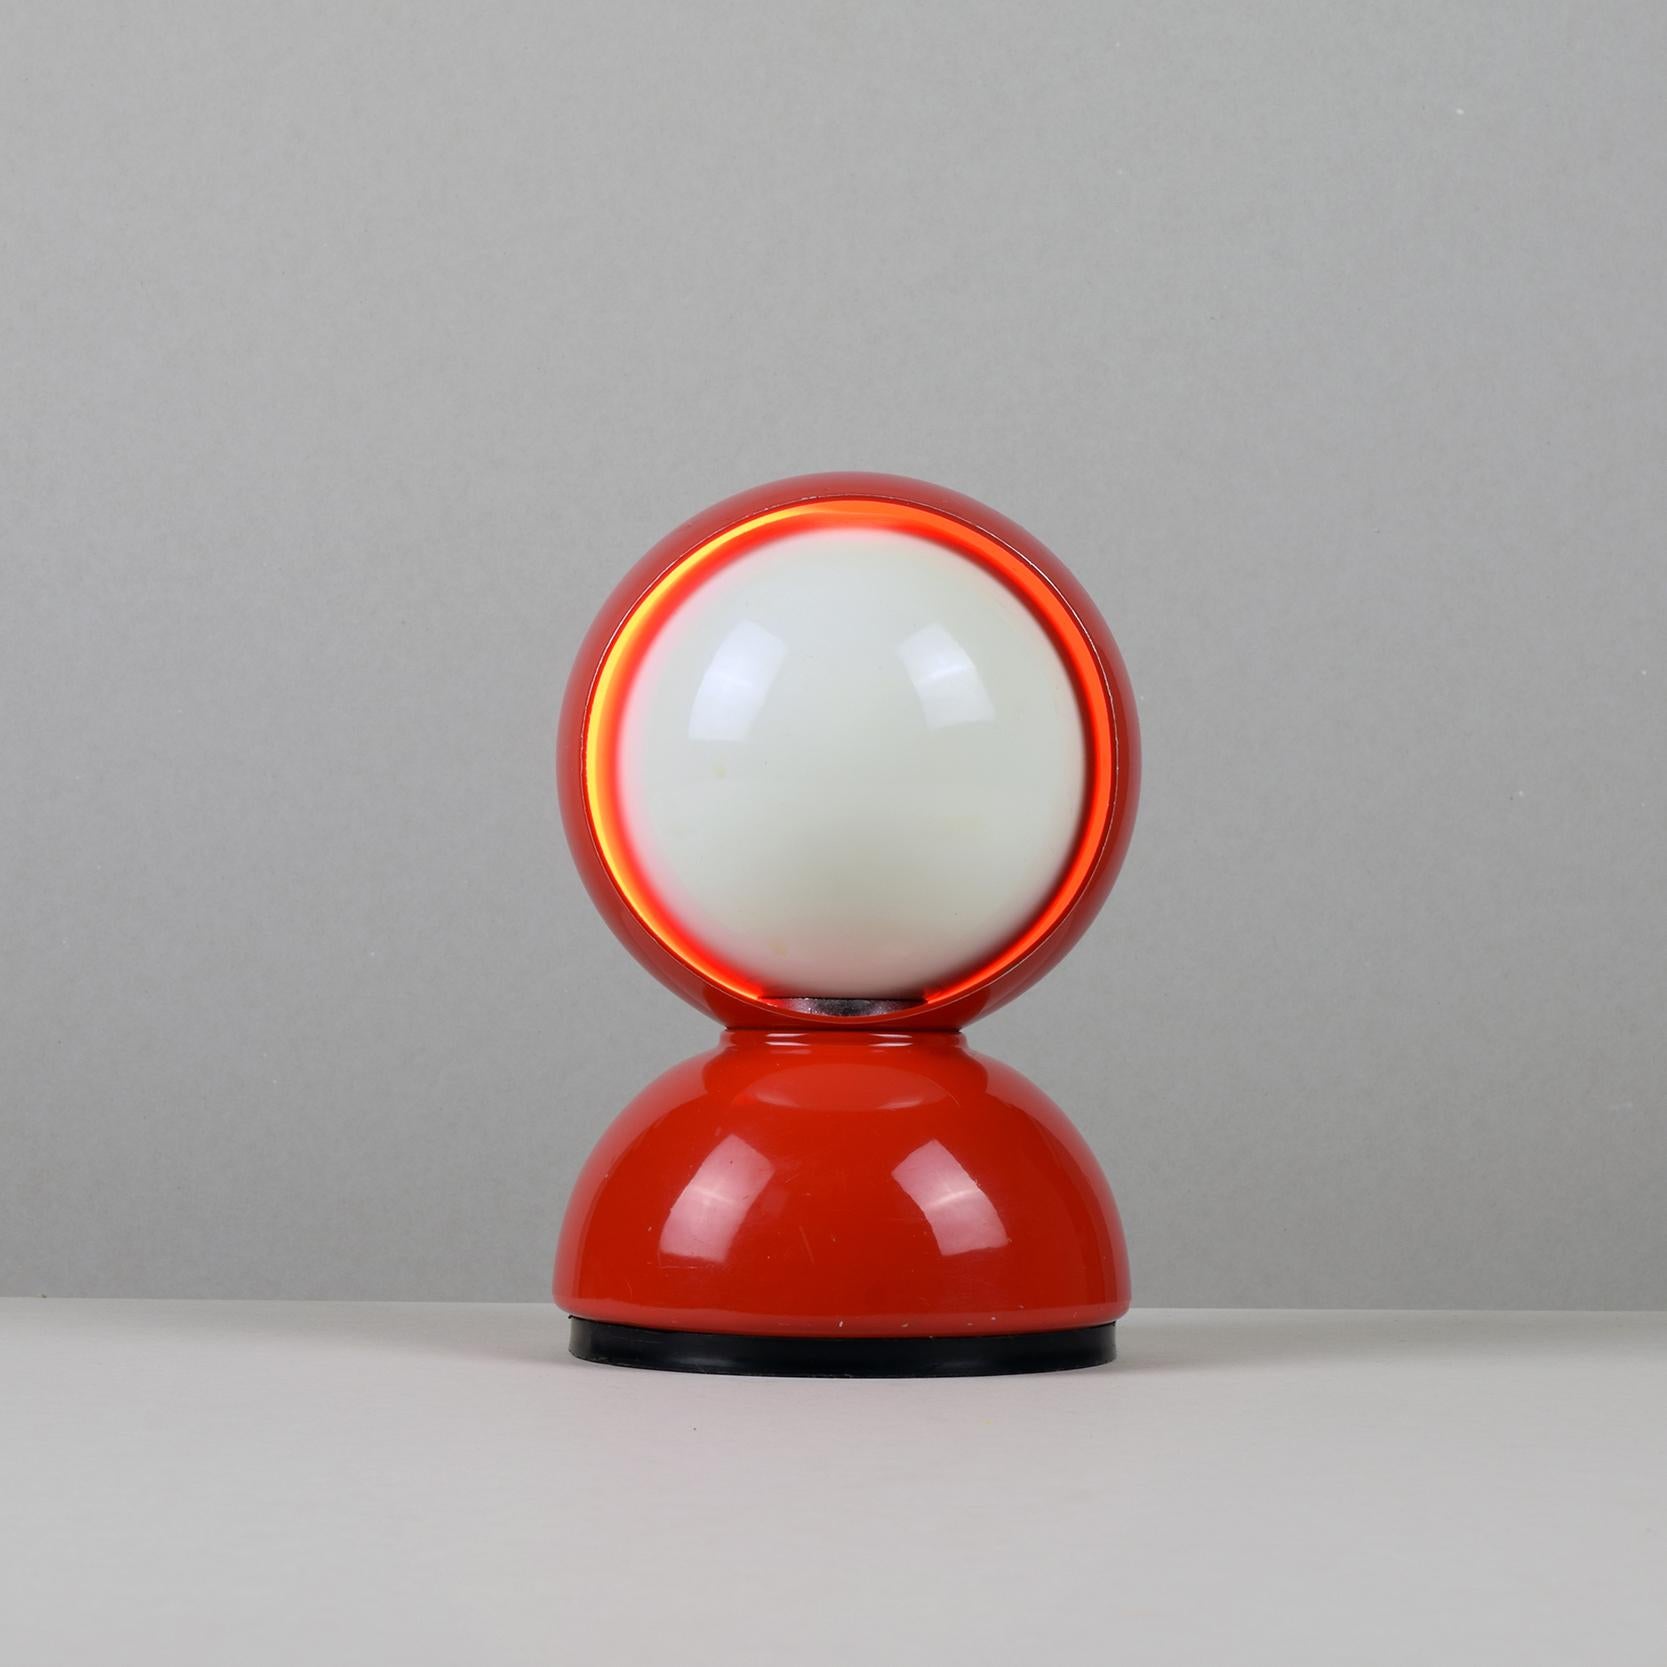 Vico Magistretti (designer)
Artemide (fabricant), Italie

Lampe de table 'Eclisse' (Eclipse), conçue en 1965, il s'agit d'une première version.

Métal peint en rouge et plastique noir.

Un bon exemple de cette icône de